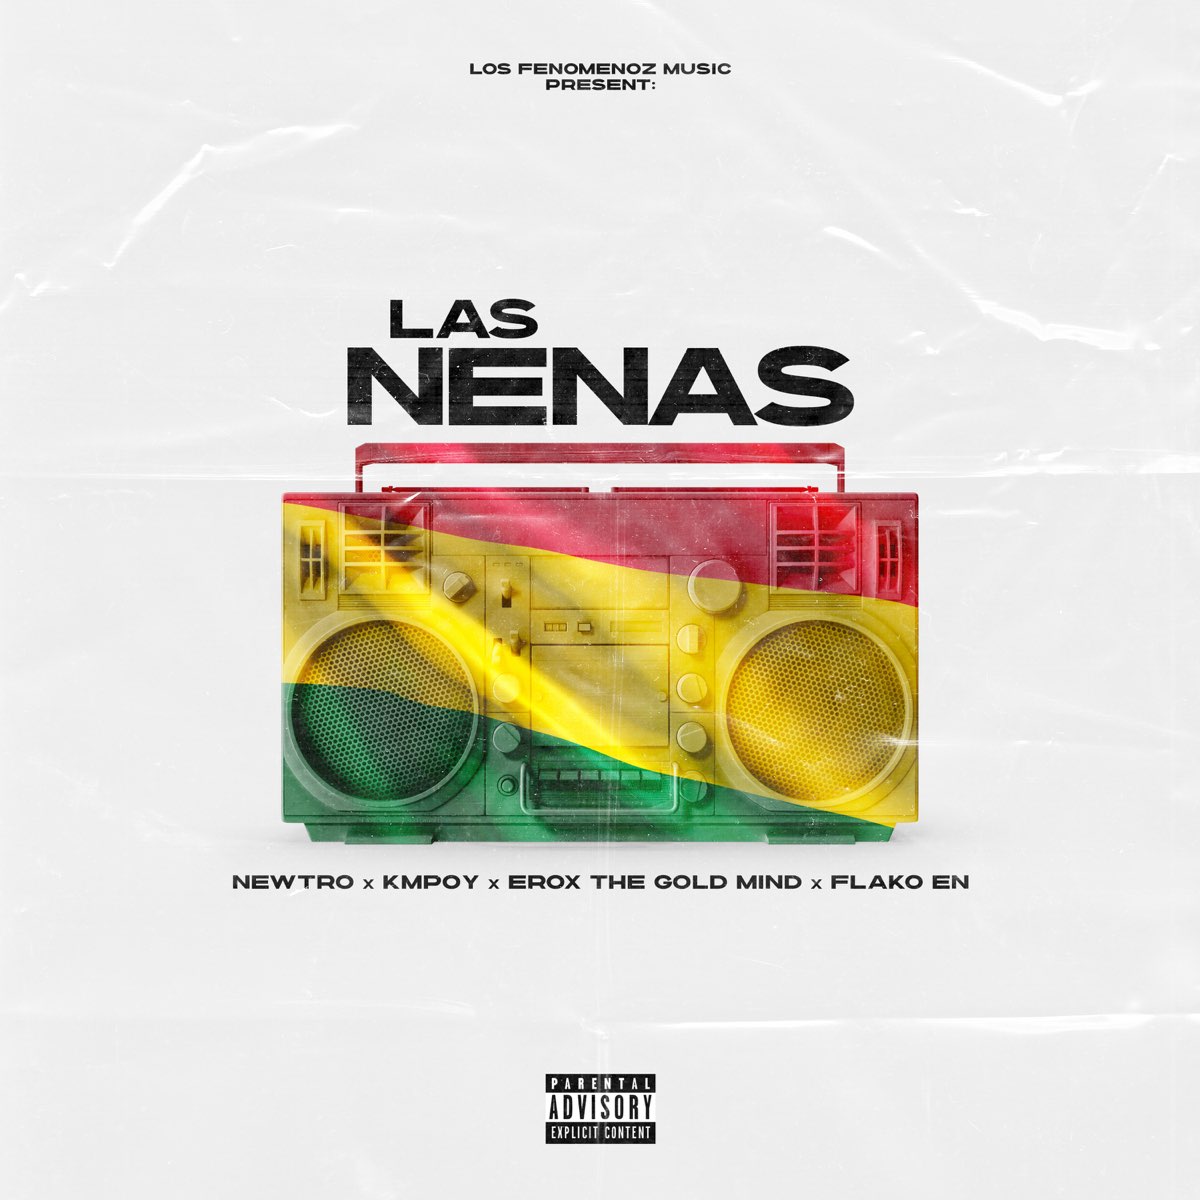 Las Nenas (feat. Flako EN) - Single by Newtro, Kmpoy & Erox the Gold Mind  on Apple Music